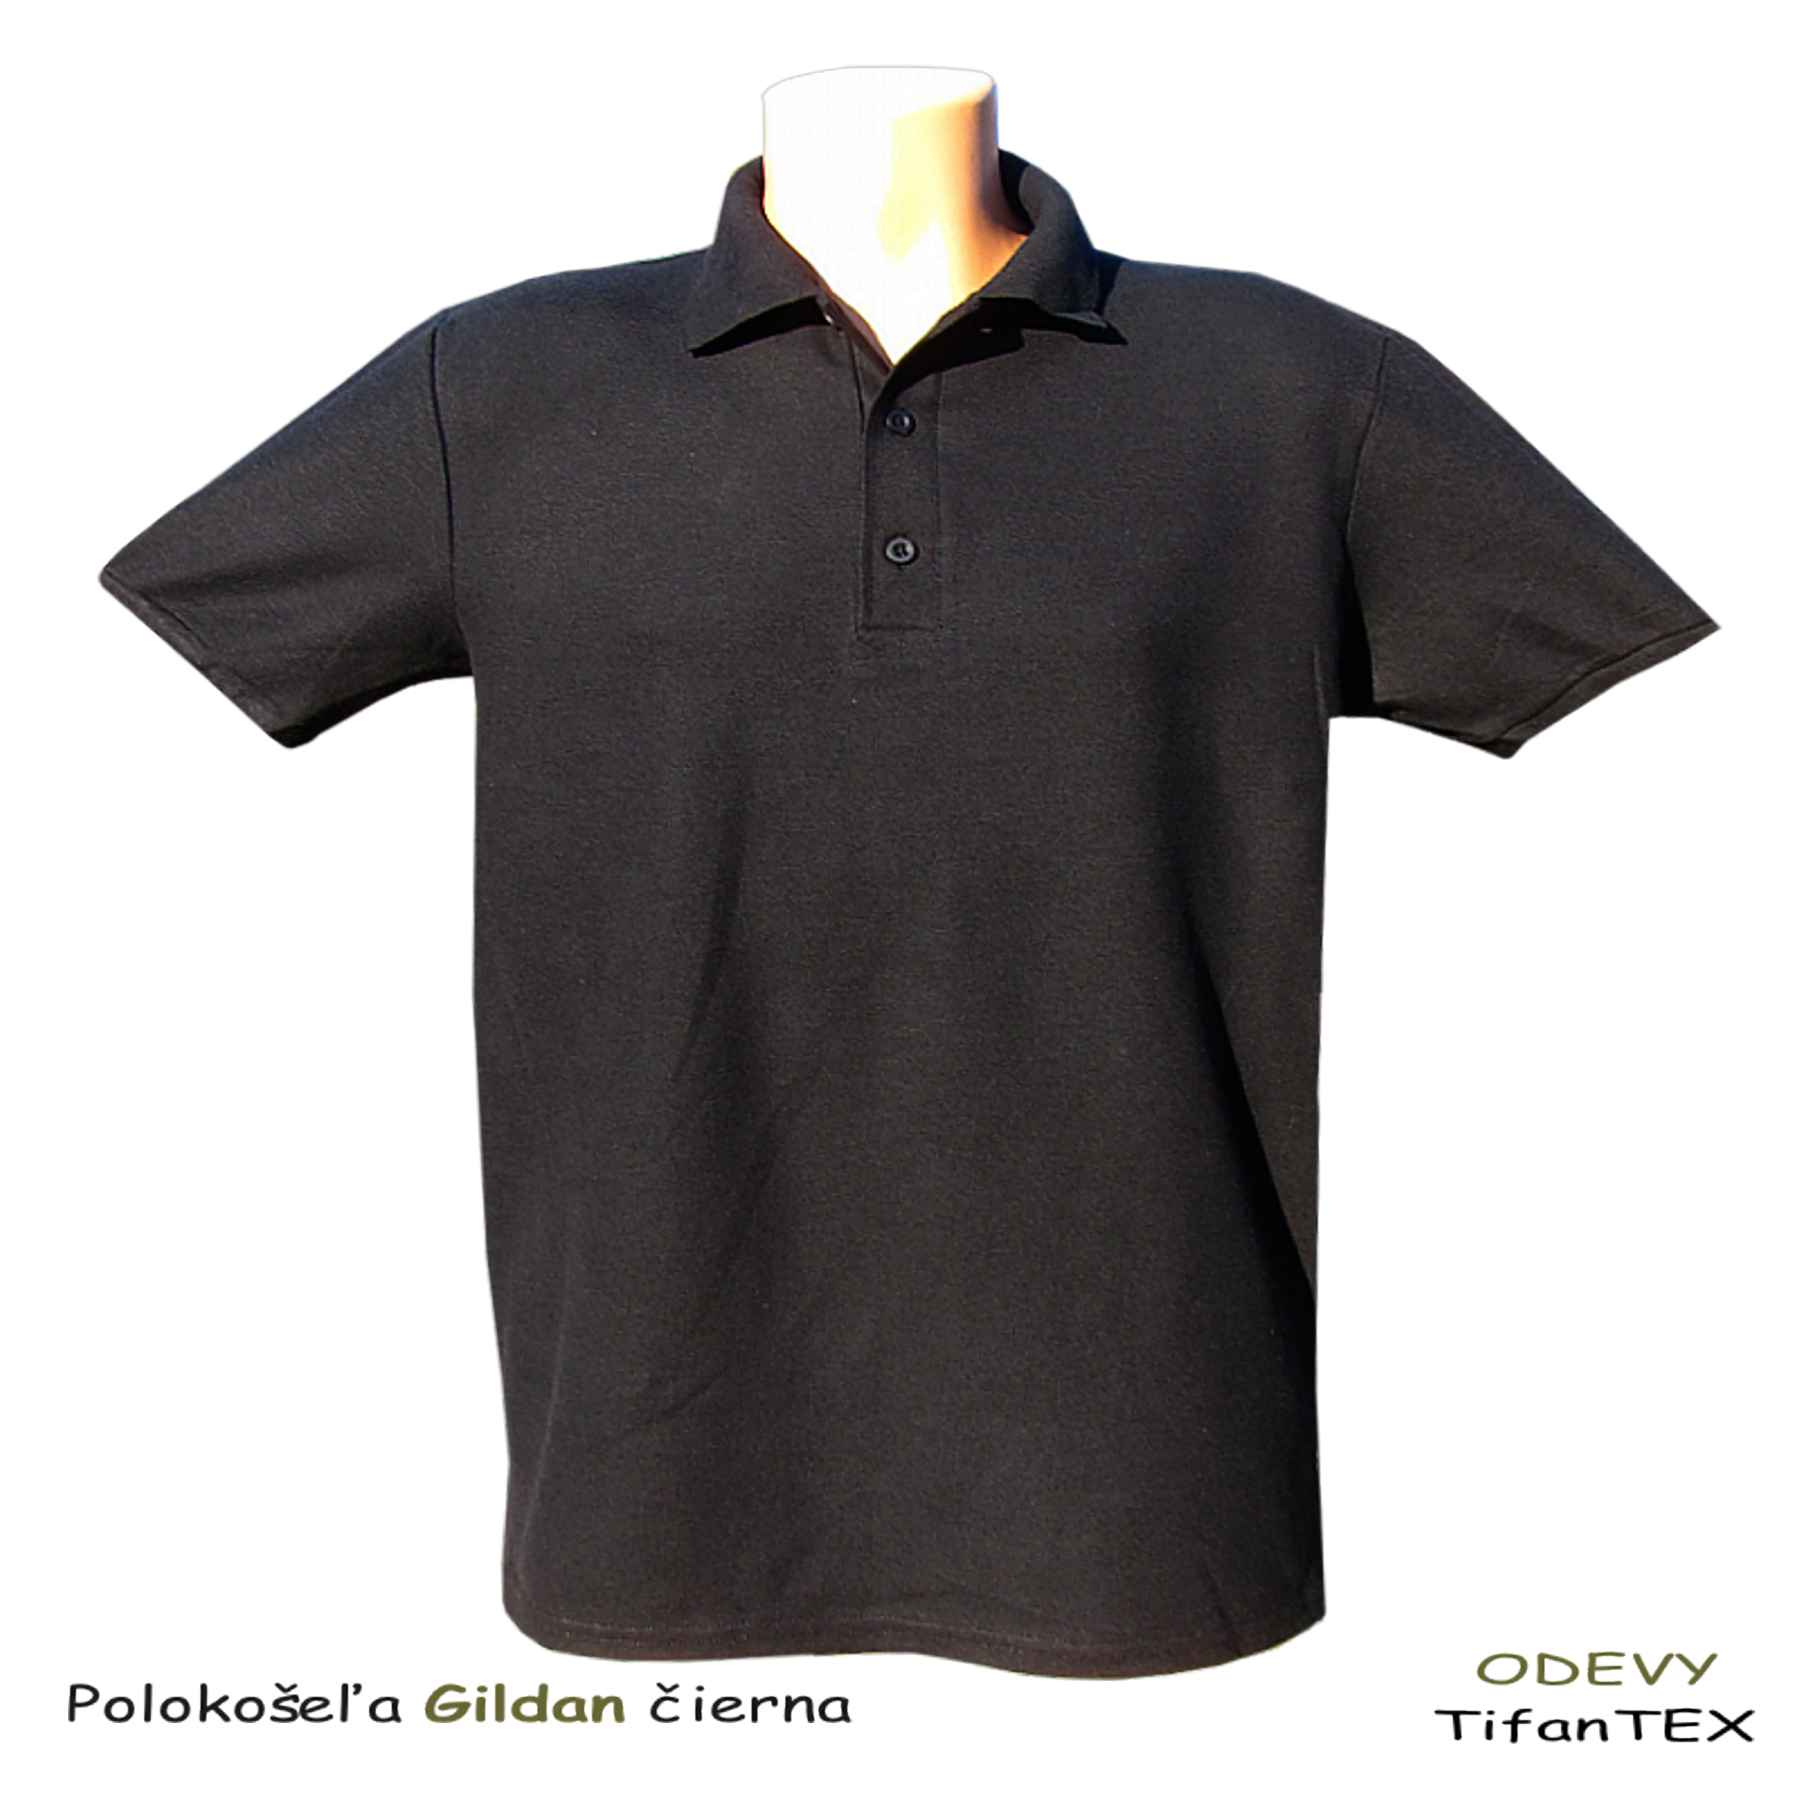 Bavlnená polokošeľa pánska Gildan čierna, pracovné odevy, veľkoobchod Tifantex